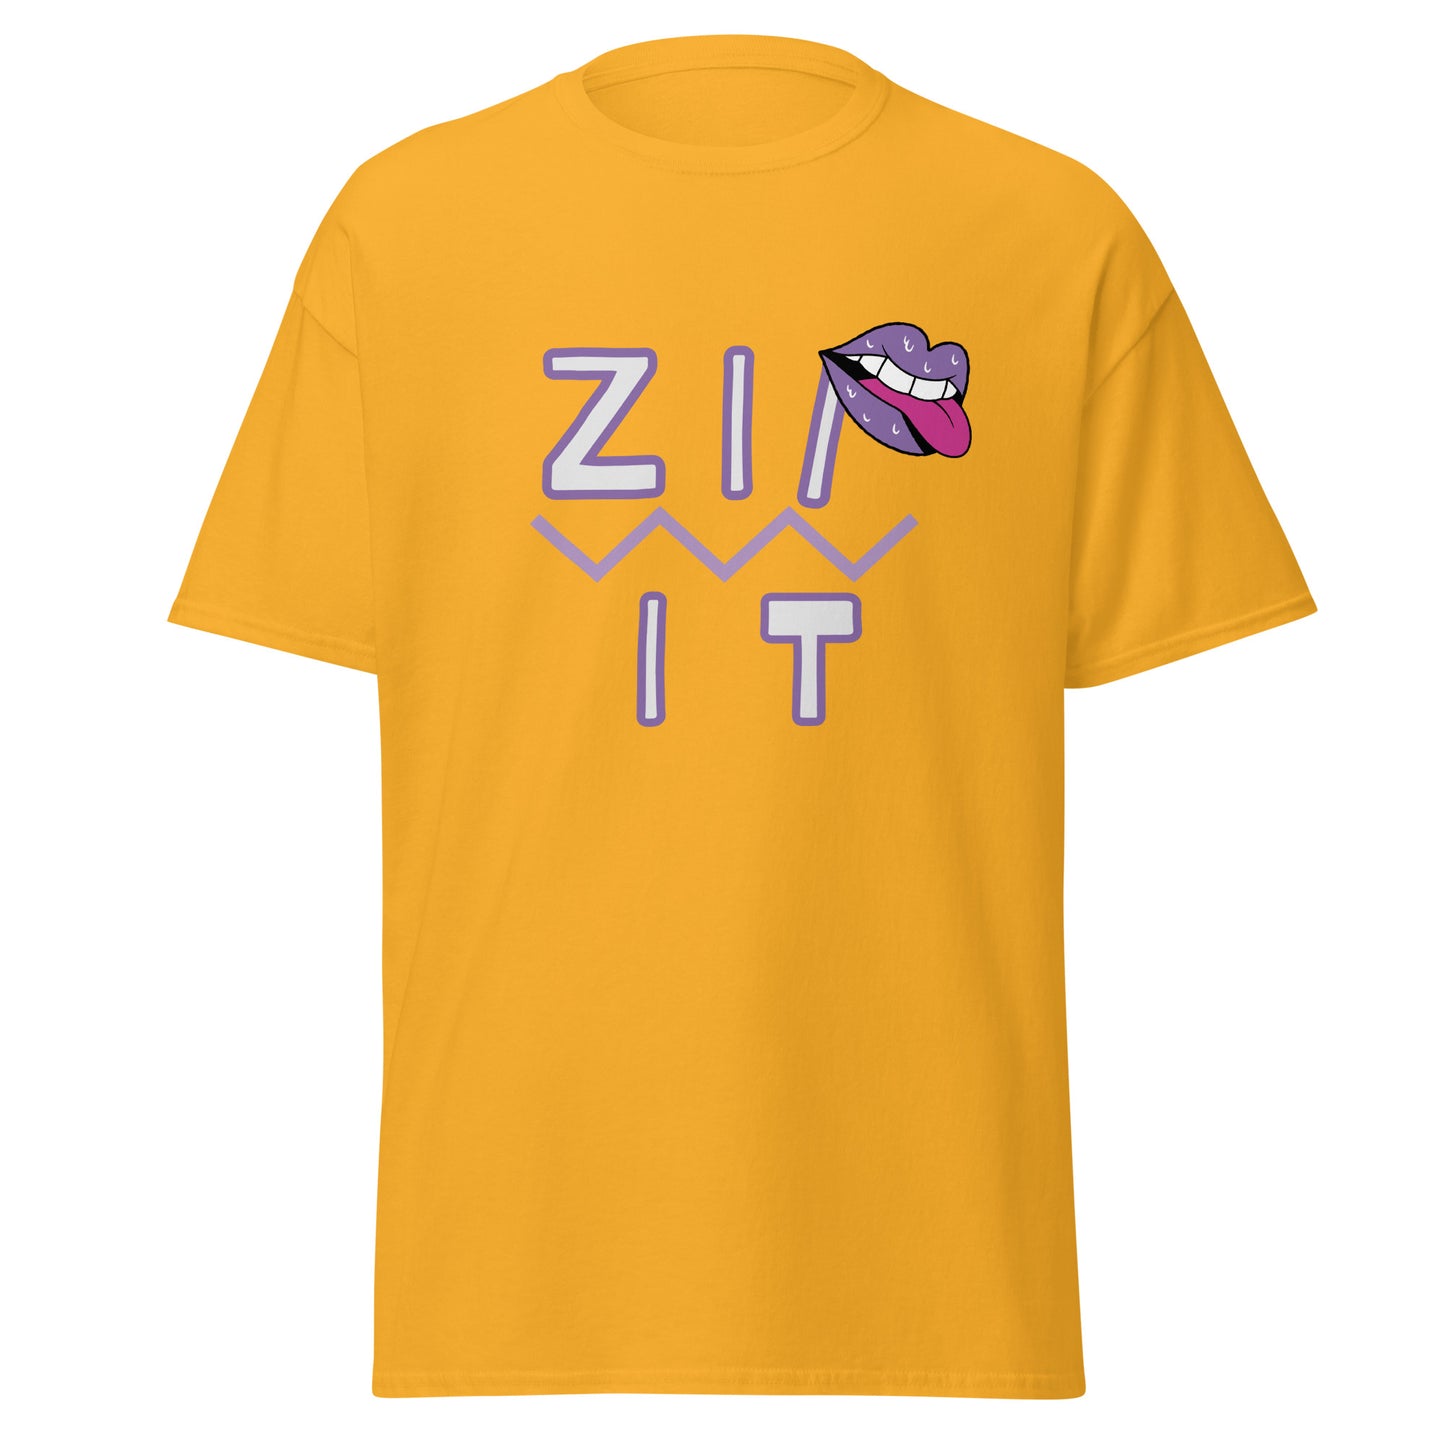 Zip It T-Shirt